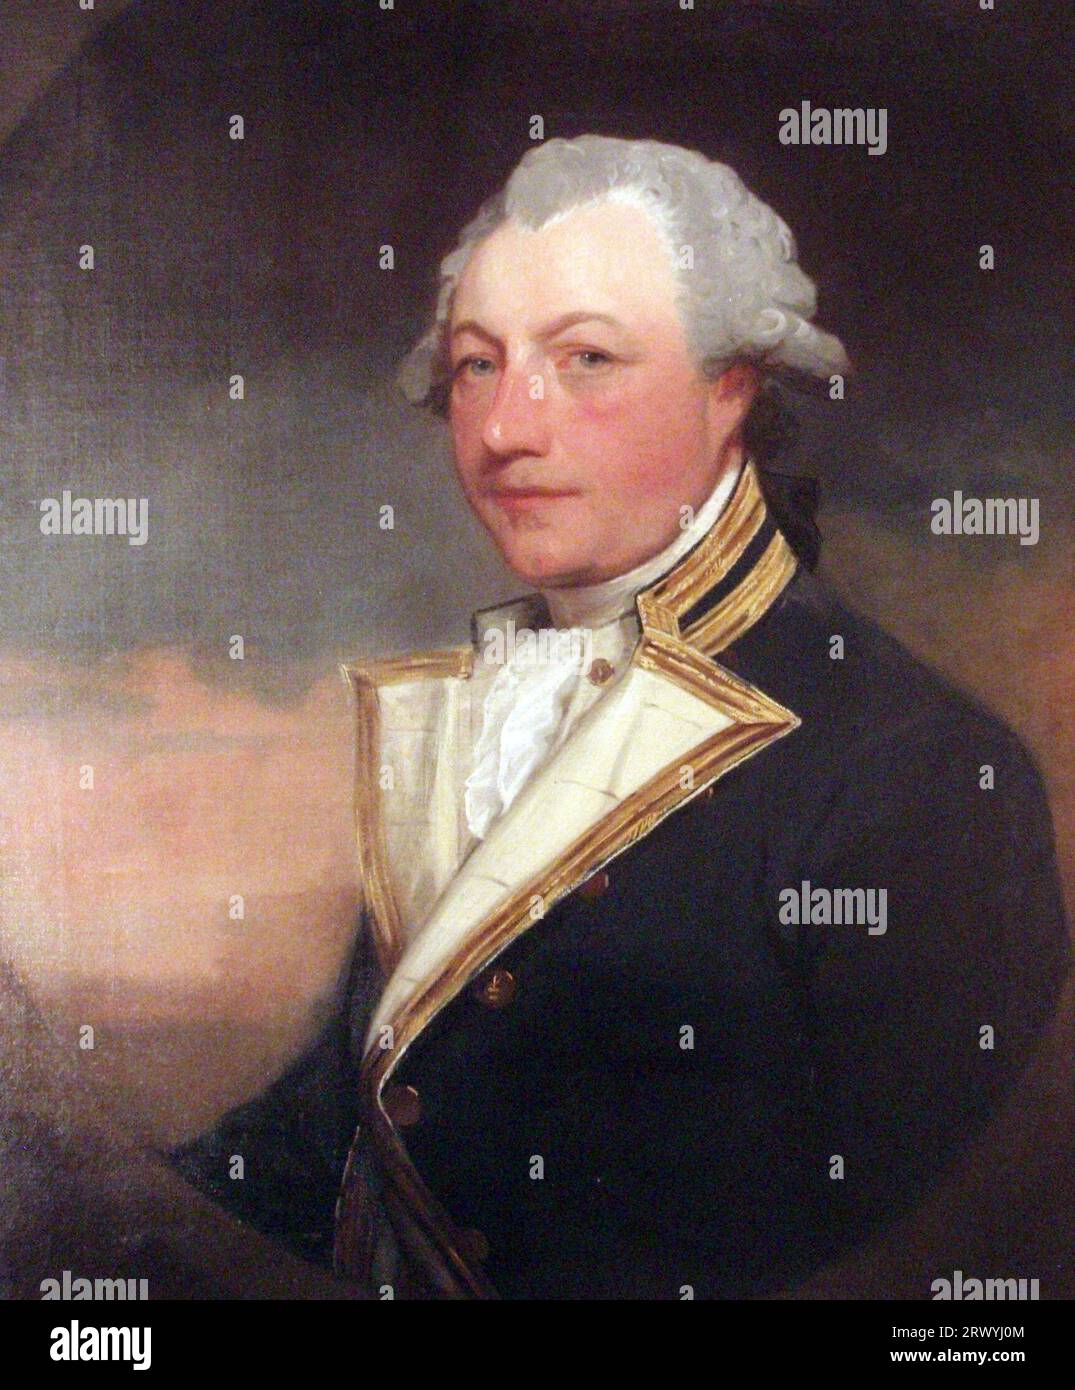 Sir Robert Kingsmill, amiral dans la Royal Navy pendant les guerres de la Révolution américaine et française Banque D'Images